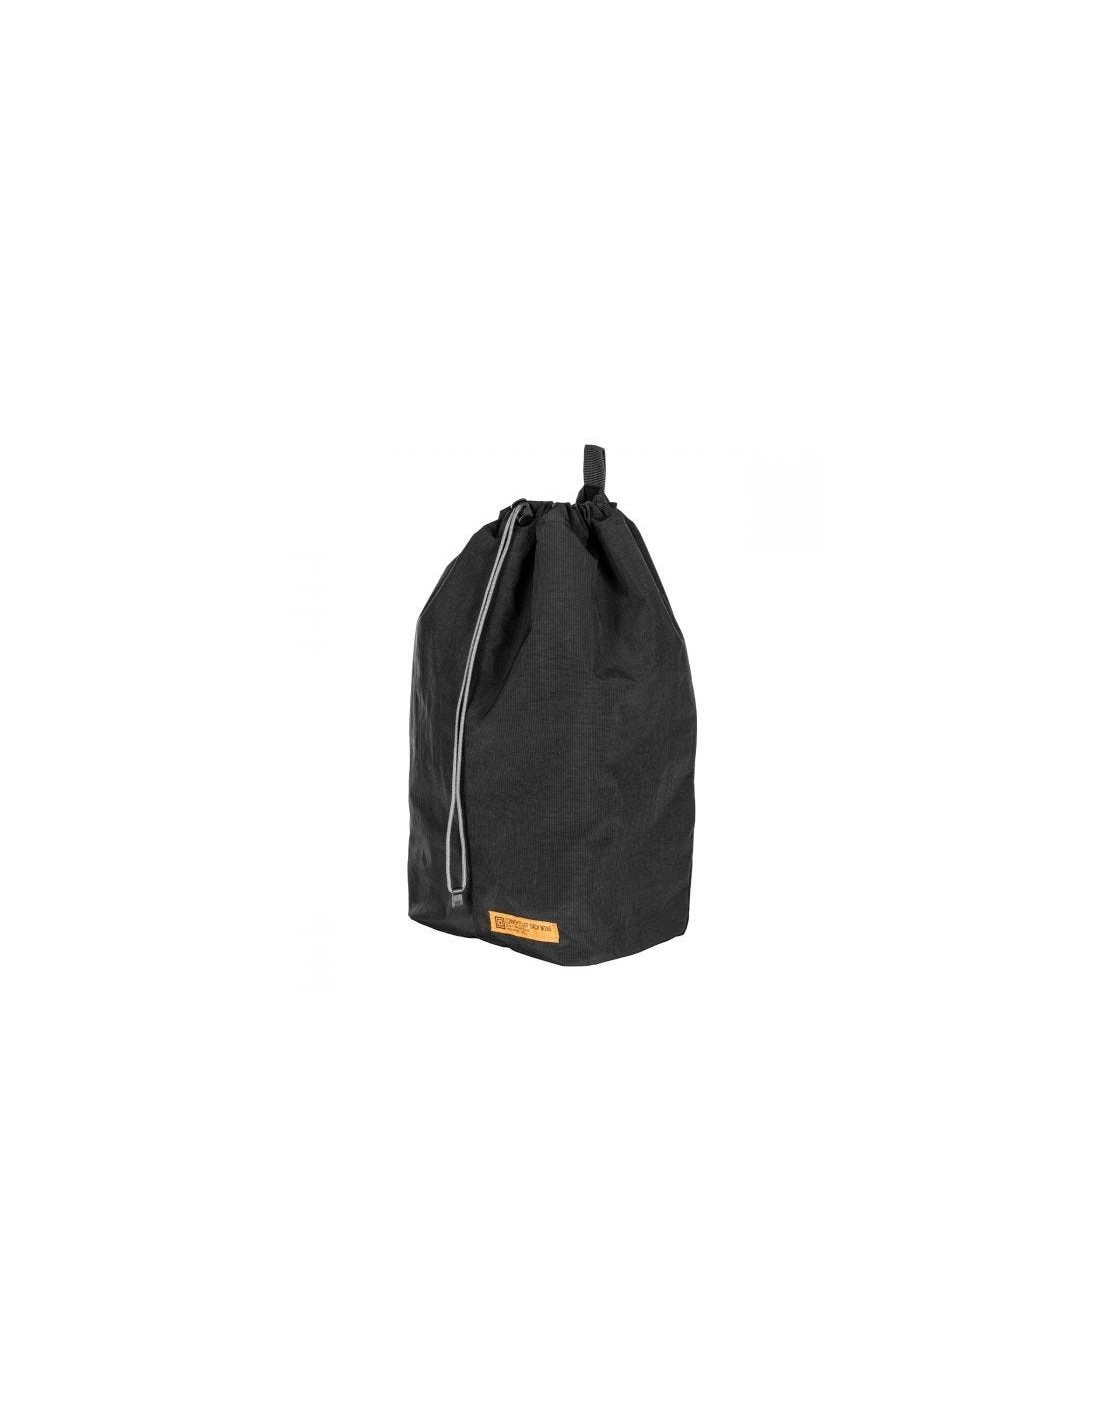 5.11 Bolsa LV6 Bag negra